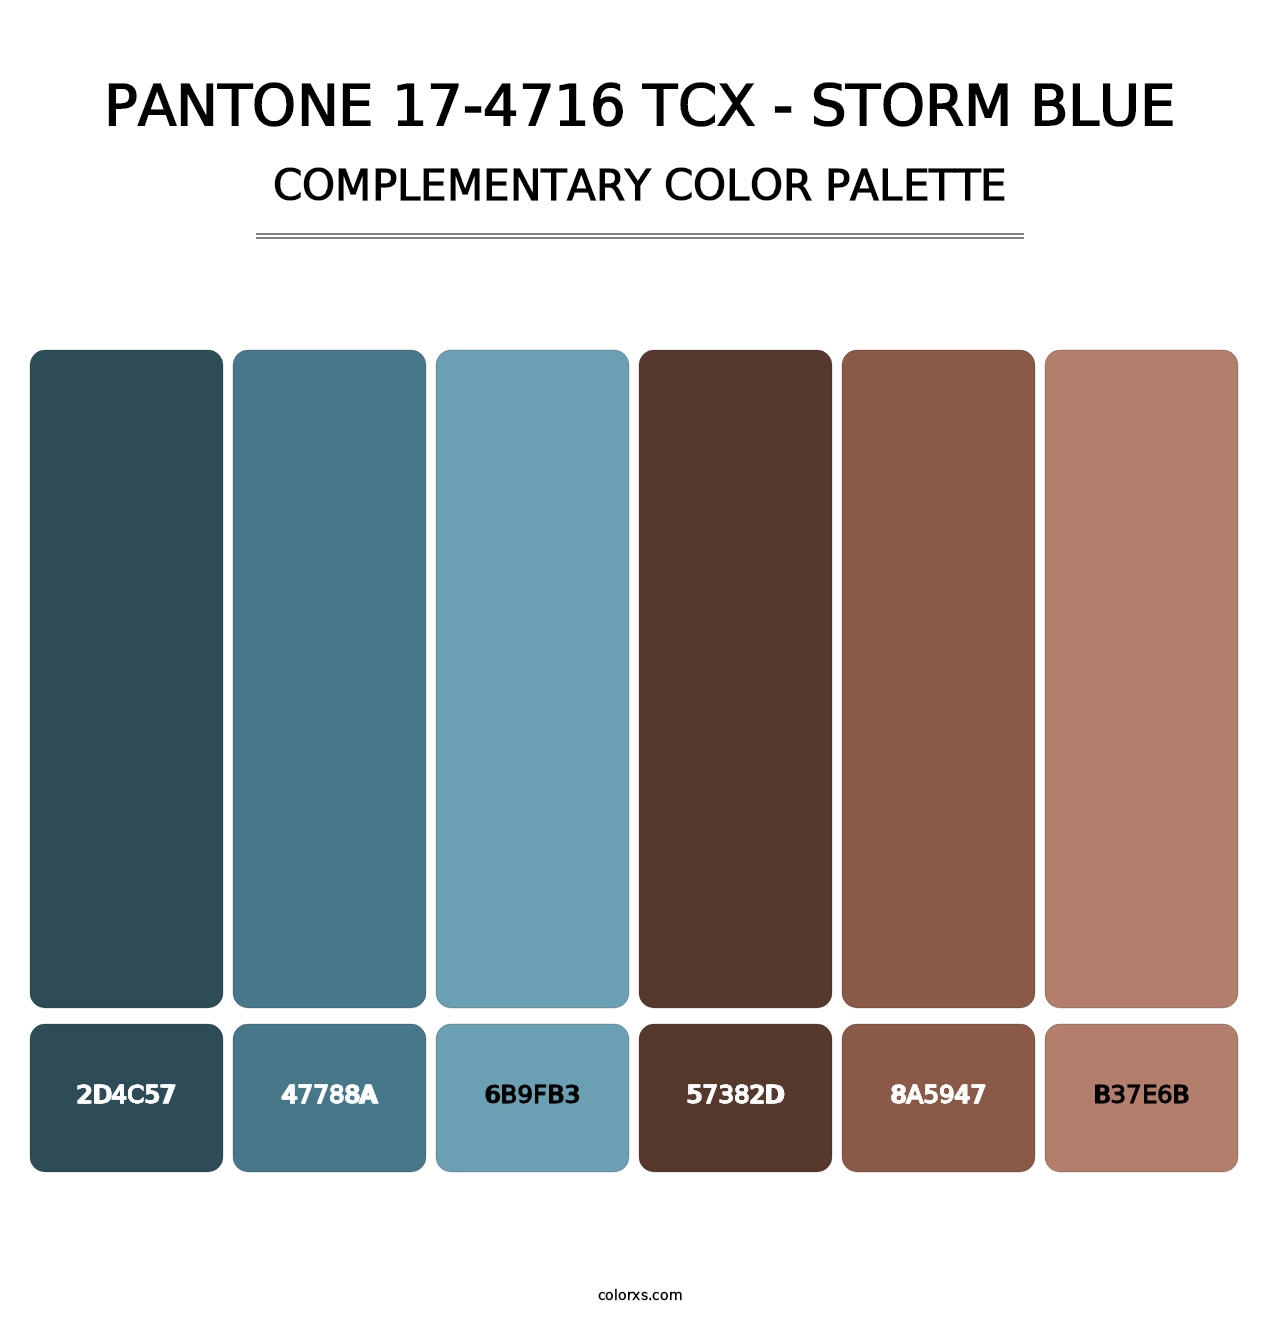 PANTONE 17-4716 TCX - Storm Blue - Complementary Color Palette